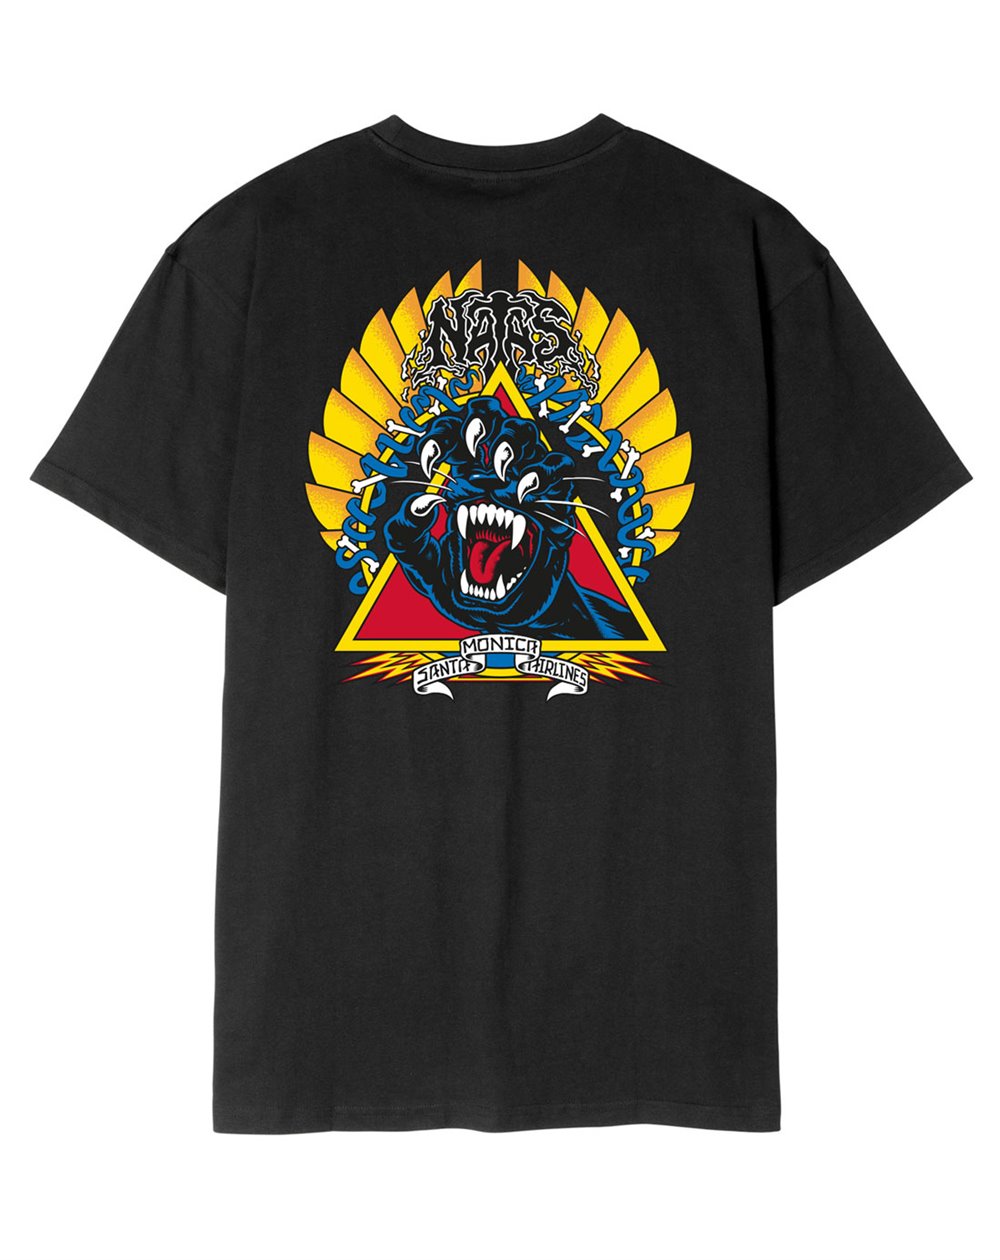 Santa Cruz T-Shirt Uomo Natas Screaming Panther (Black)